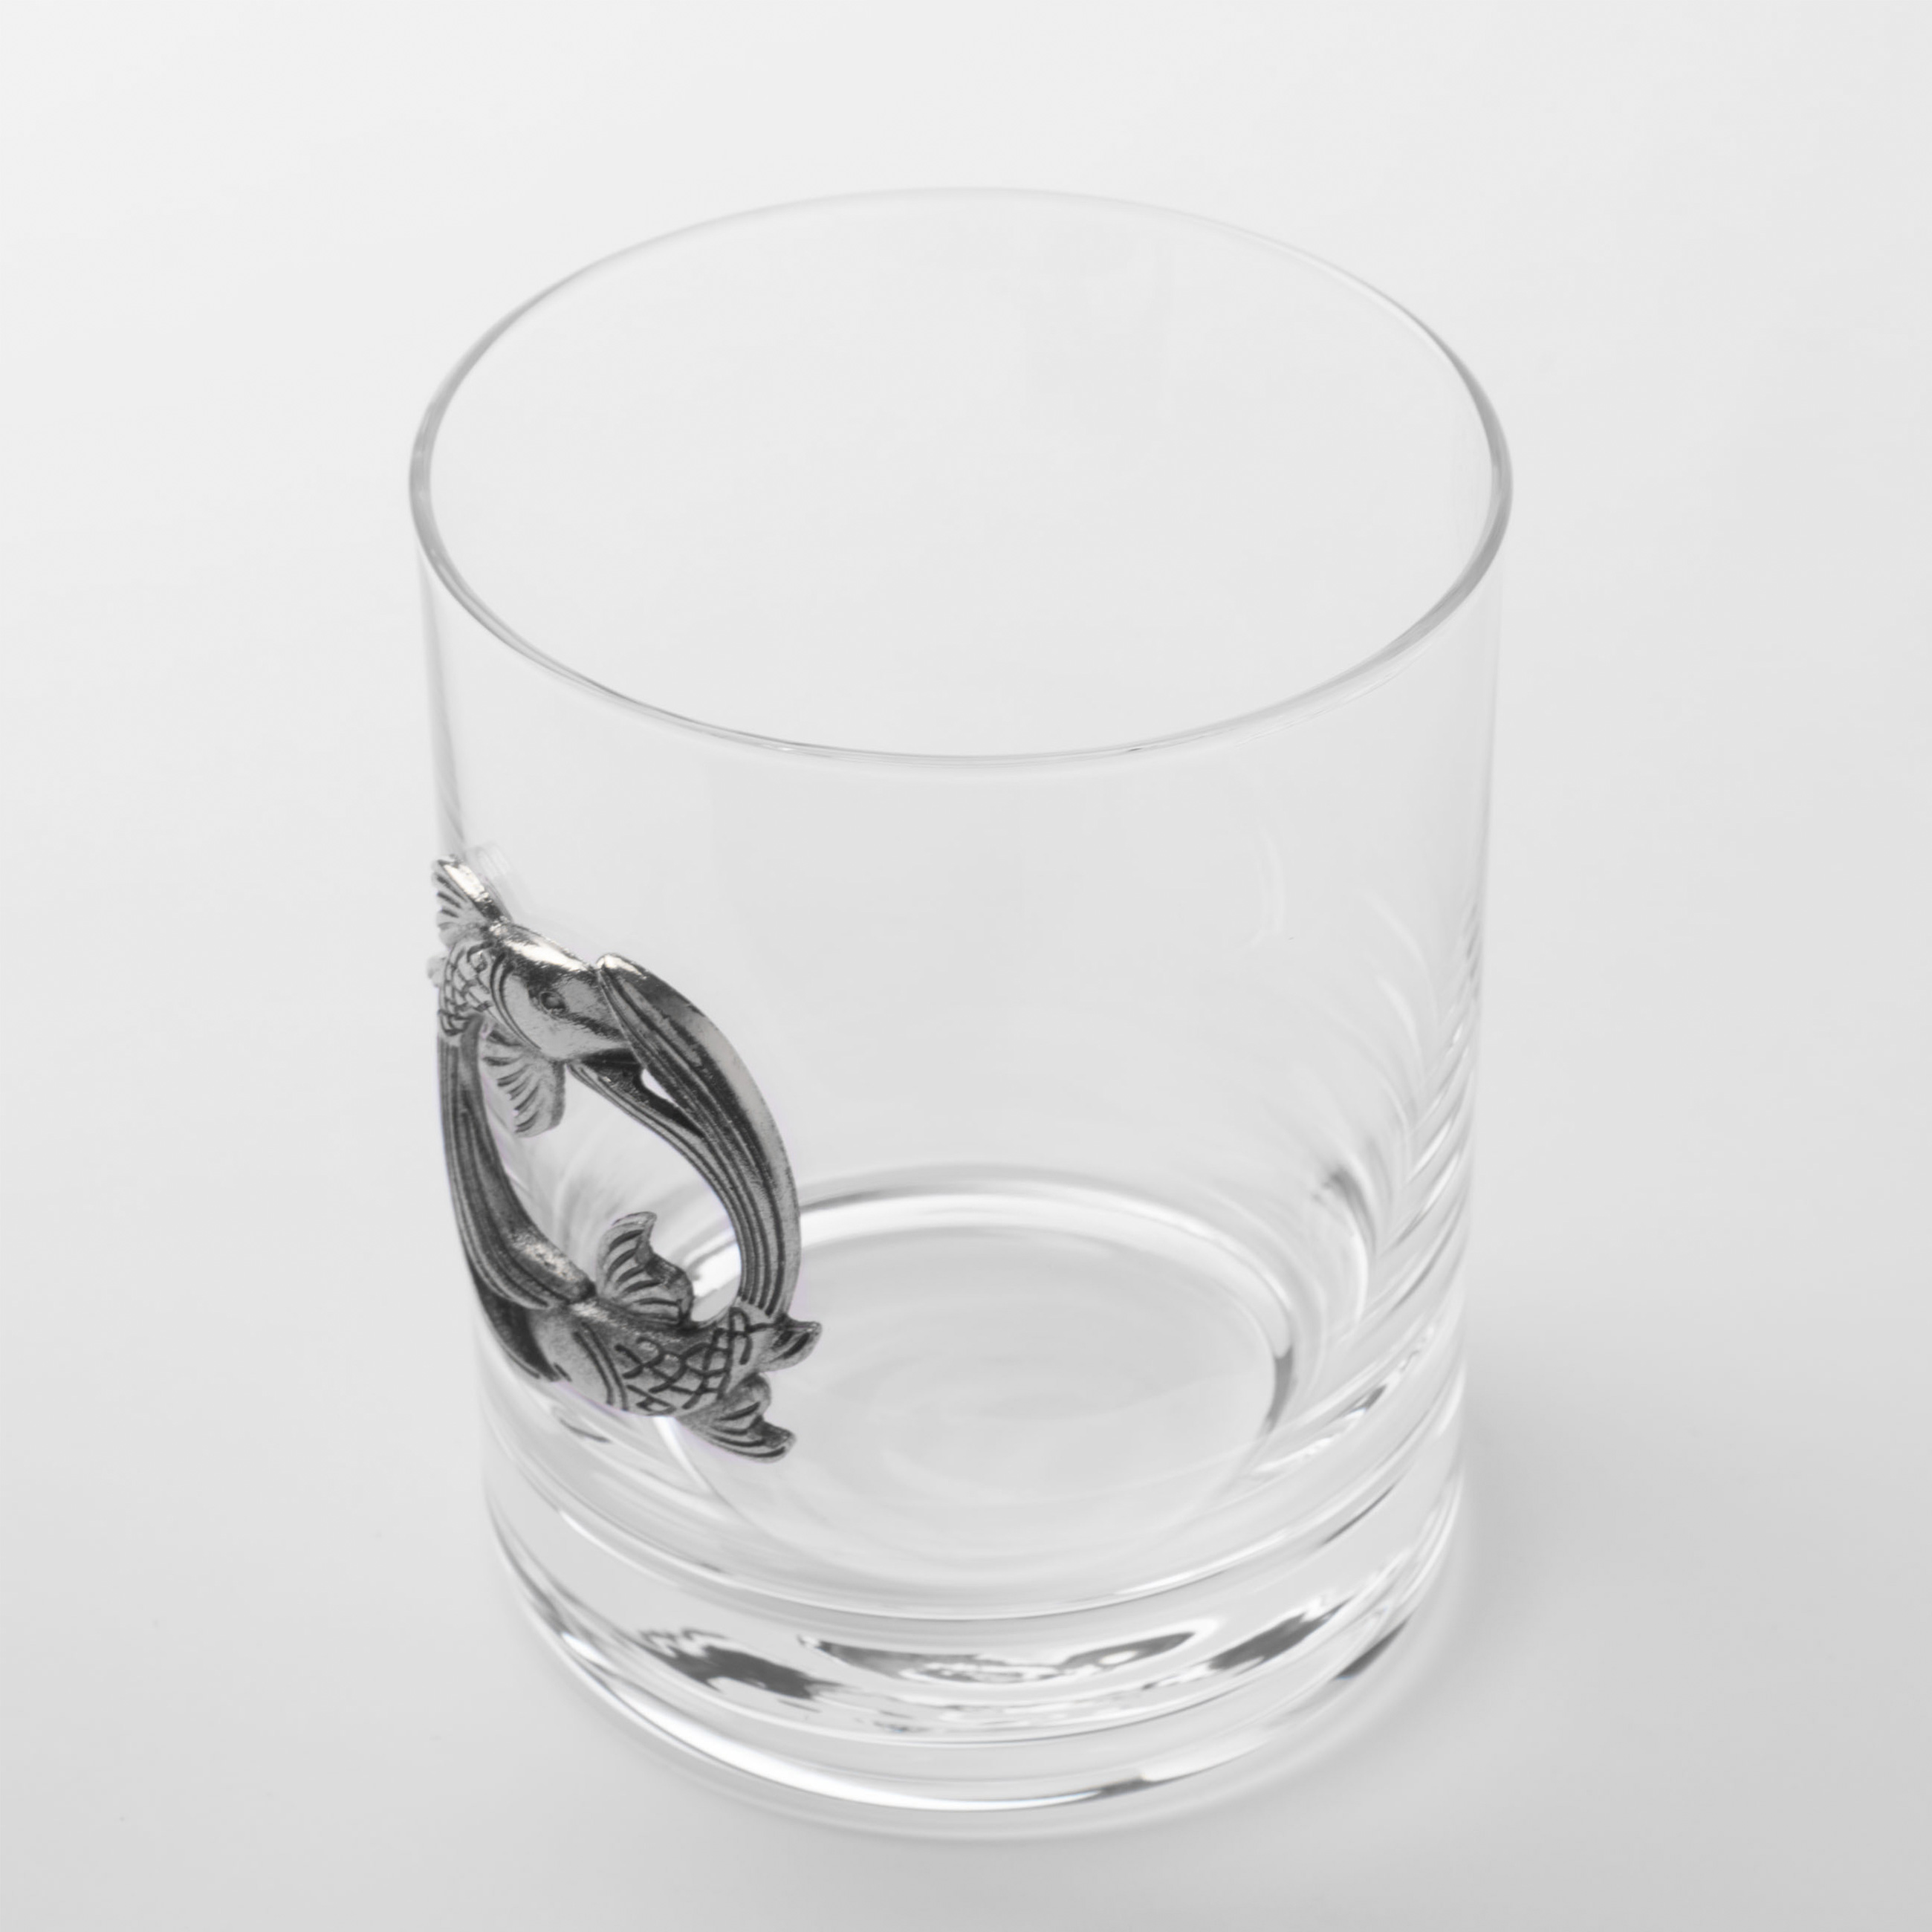 Стакан для виски, 340 мл, стекло/металл, серебристый, Рыбы, Zodiac изображение № 2